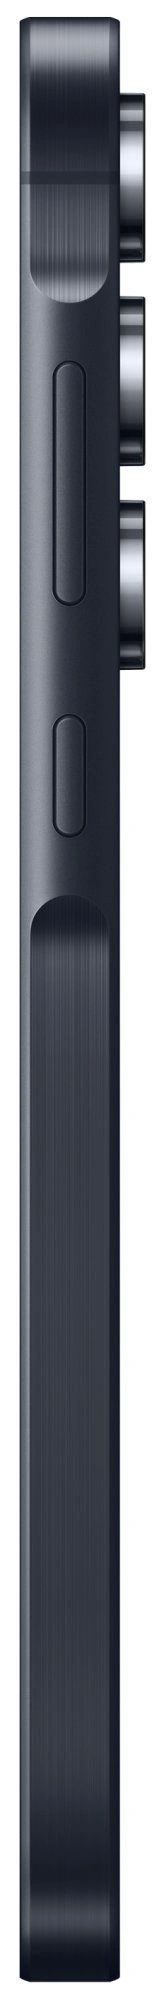 Samsung Galaxy A55, 8GB/256GB, Black